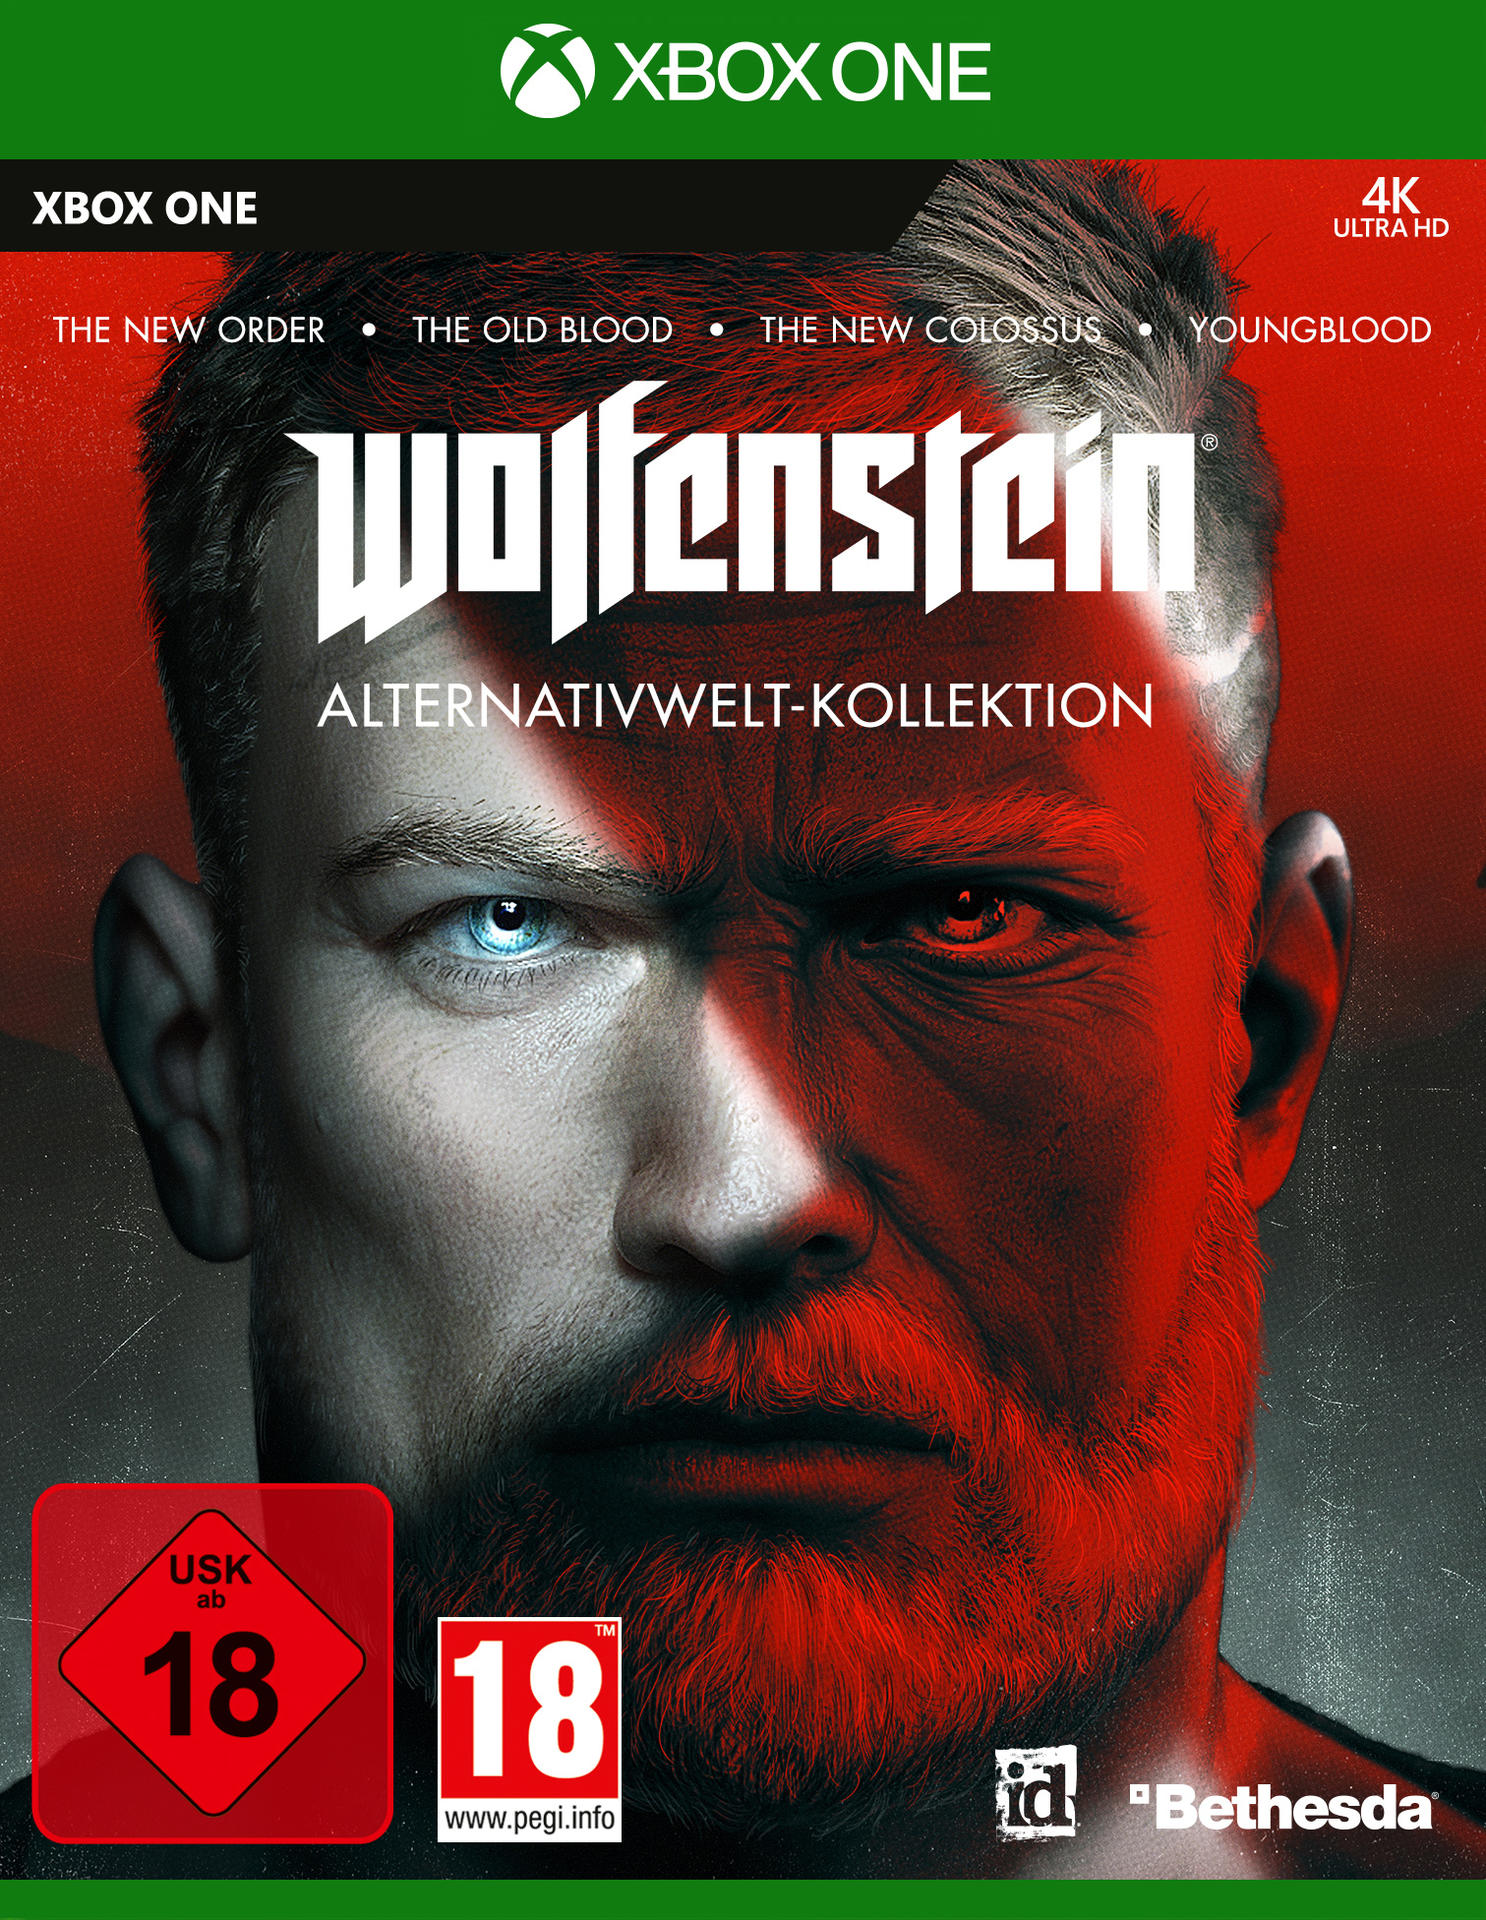 [Xbox One] Alternativwelt-Kollektion Wolfenstein -